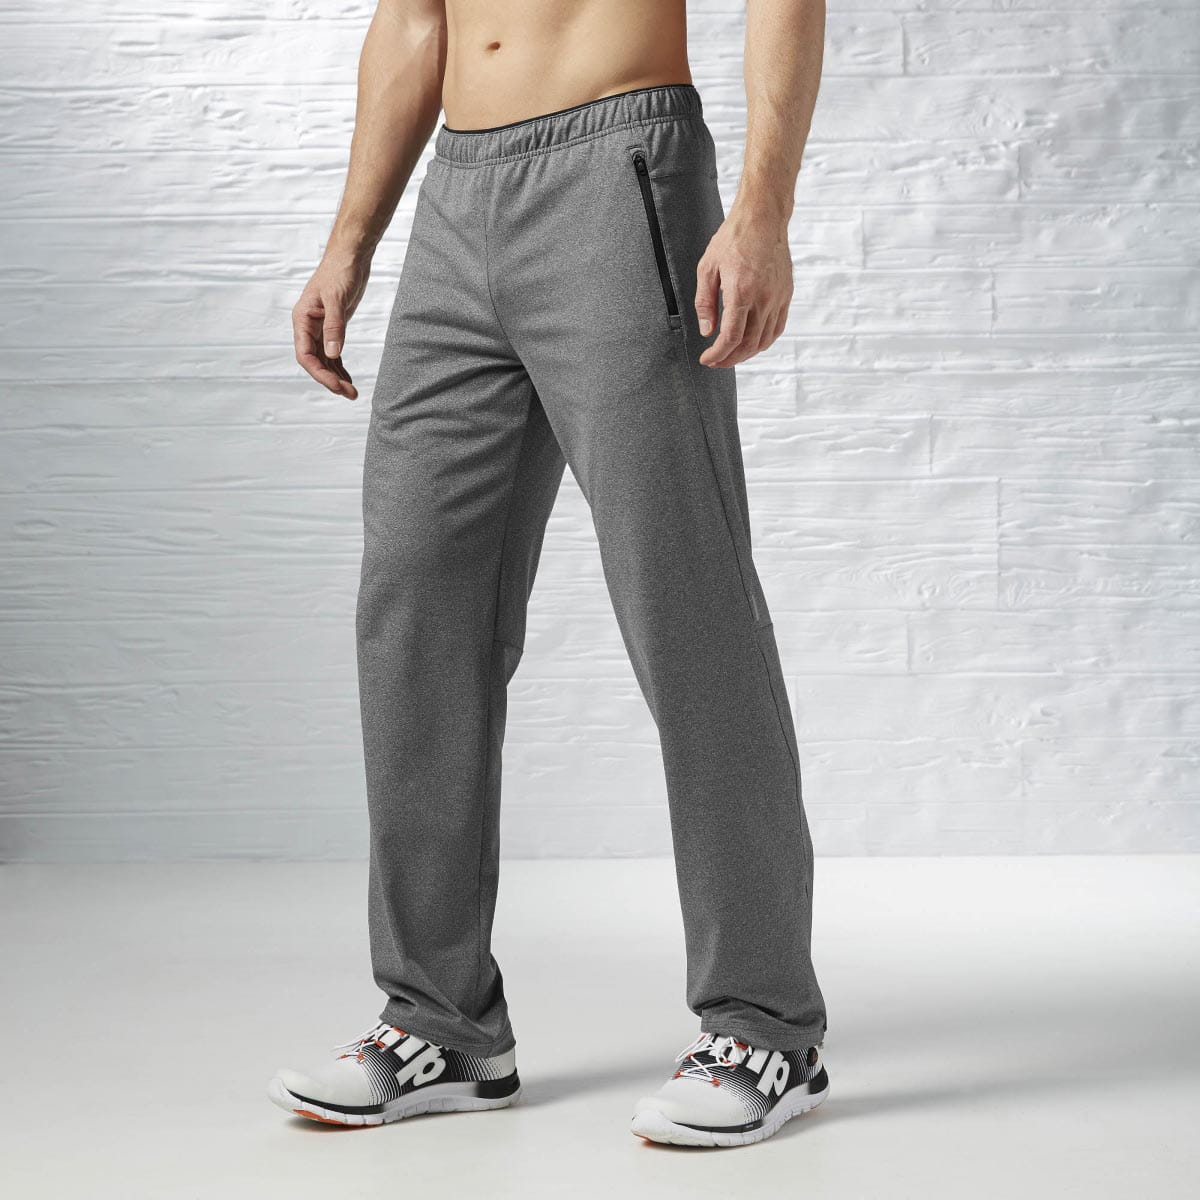 Pánské sportovní kalhoty Reebok One Series Advantage Bioknit Pant